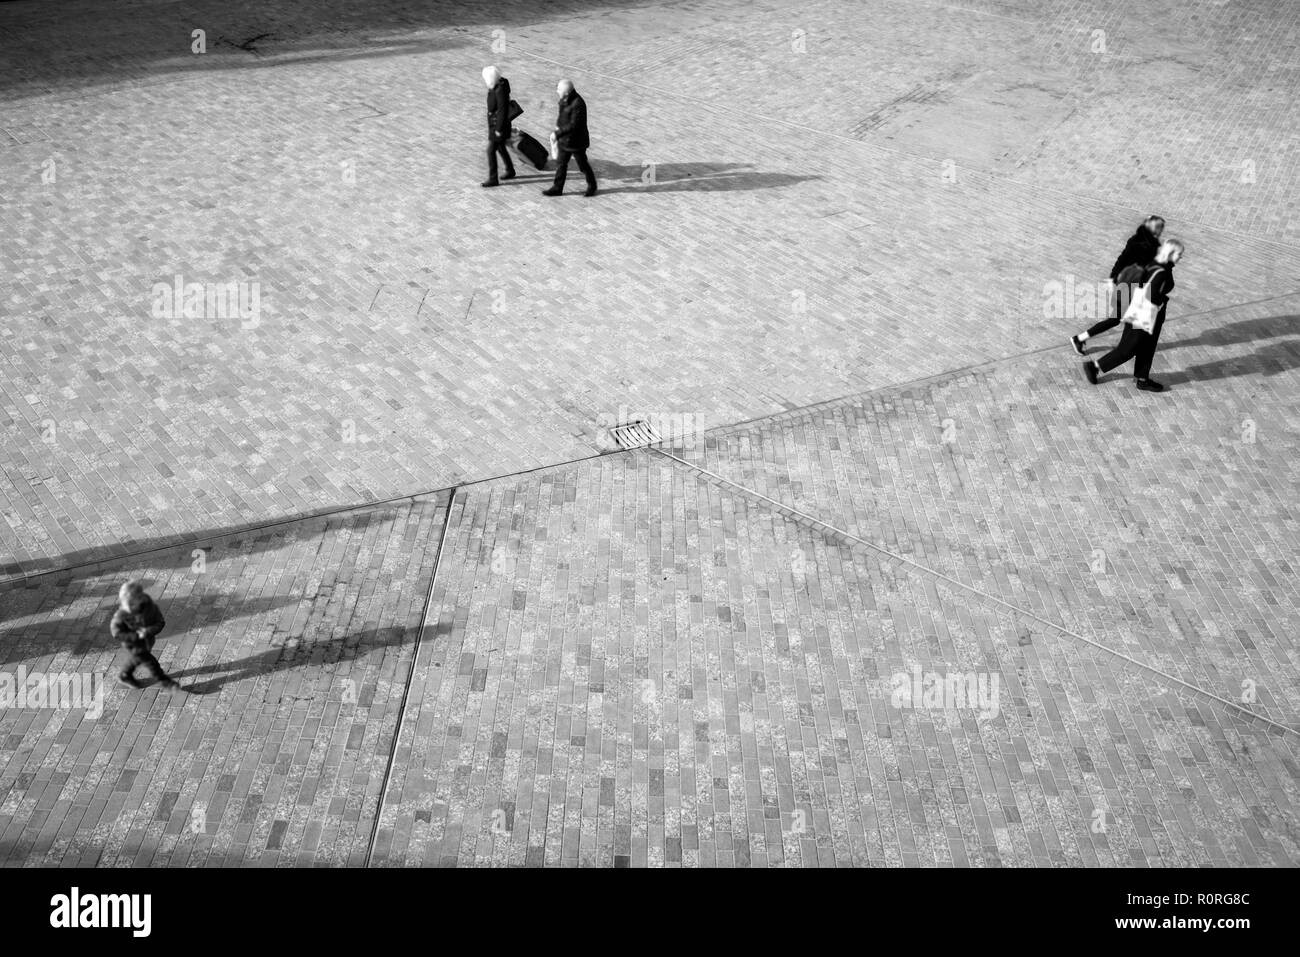 Sfocato irriconoscibile la gente da sopra a piedi su uno spazio aperto in piazza con le ombre che sporge sul pavimento Foto Stock